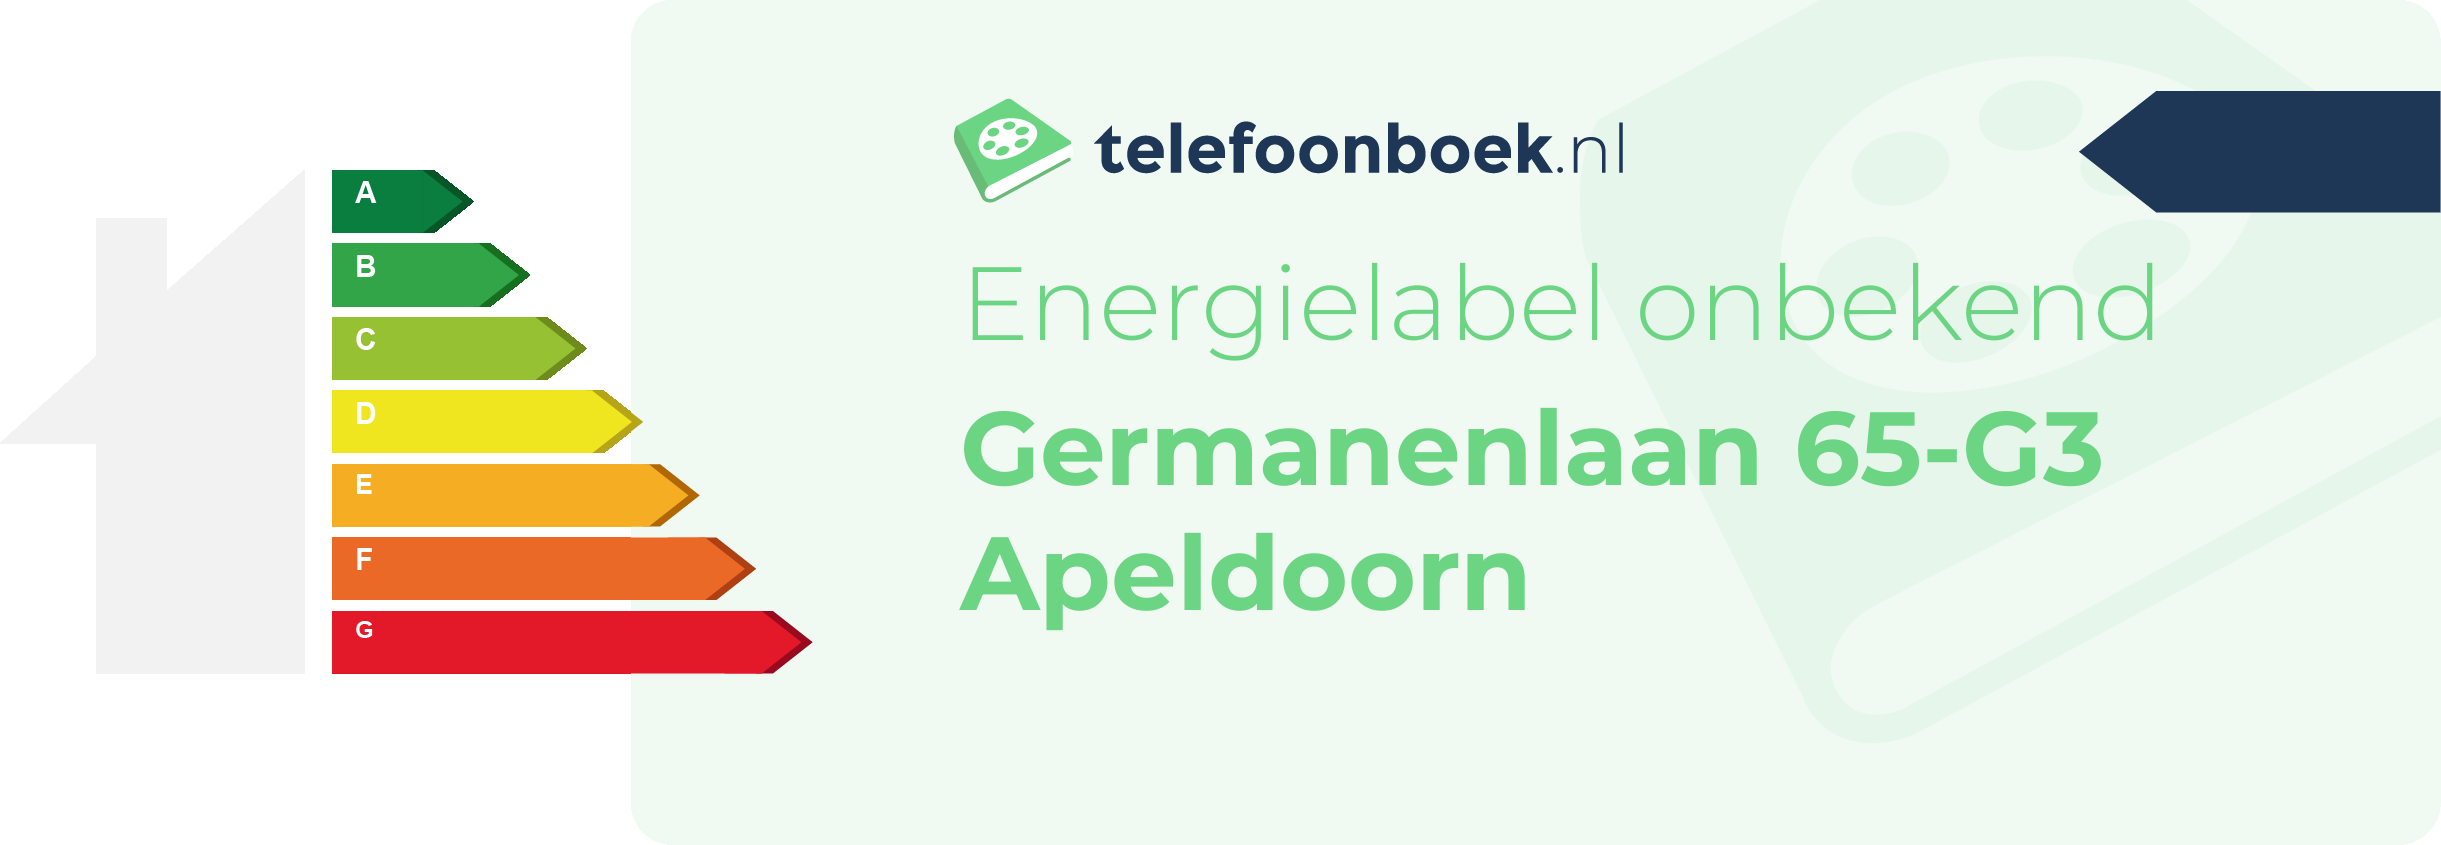 Energielabel Germanenlaan 65-G3 Apeldoorn